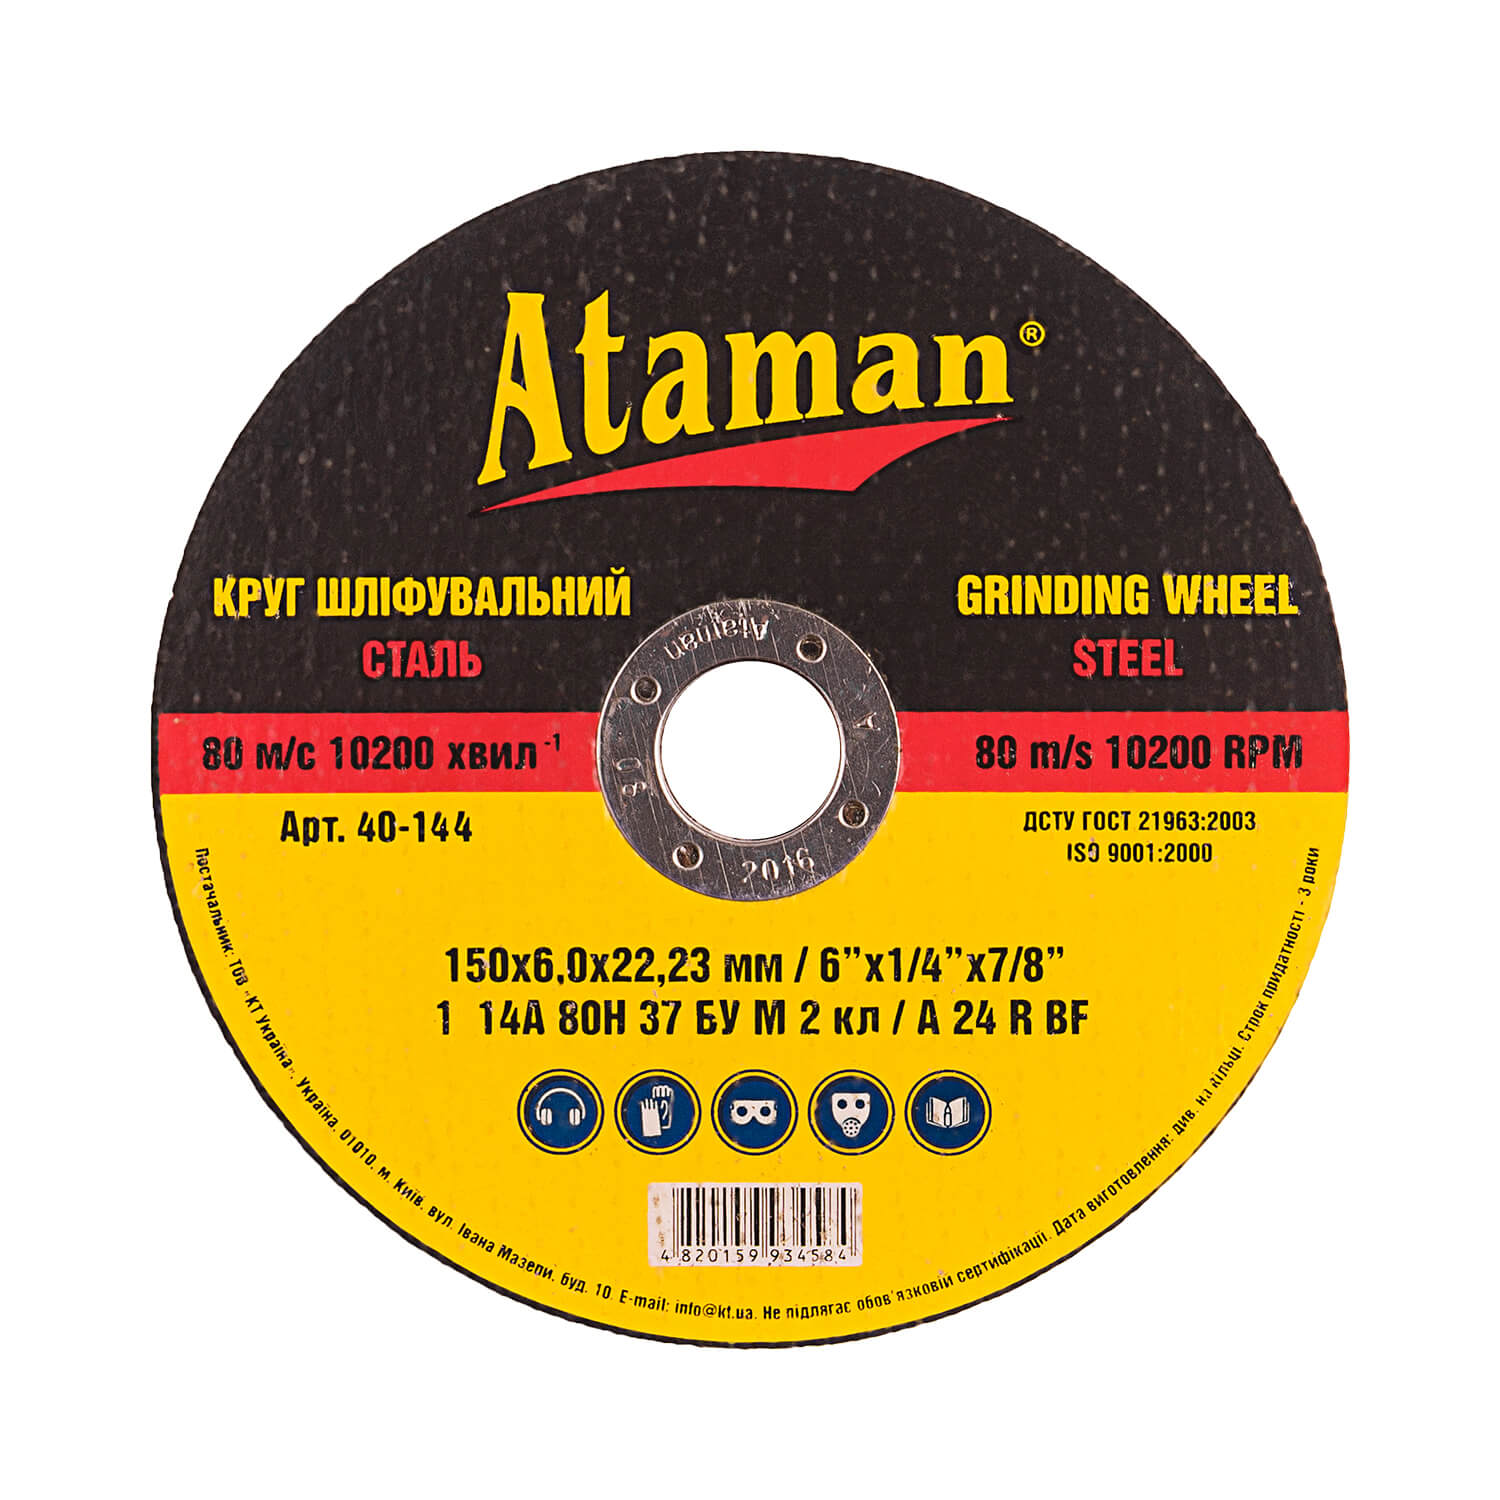 Grinding wheels on metal Ataman 1 14А 150х6.0х22.2323